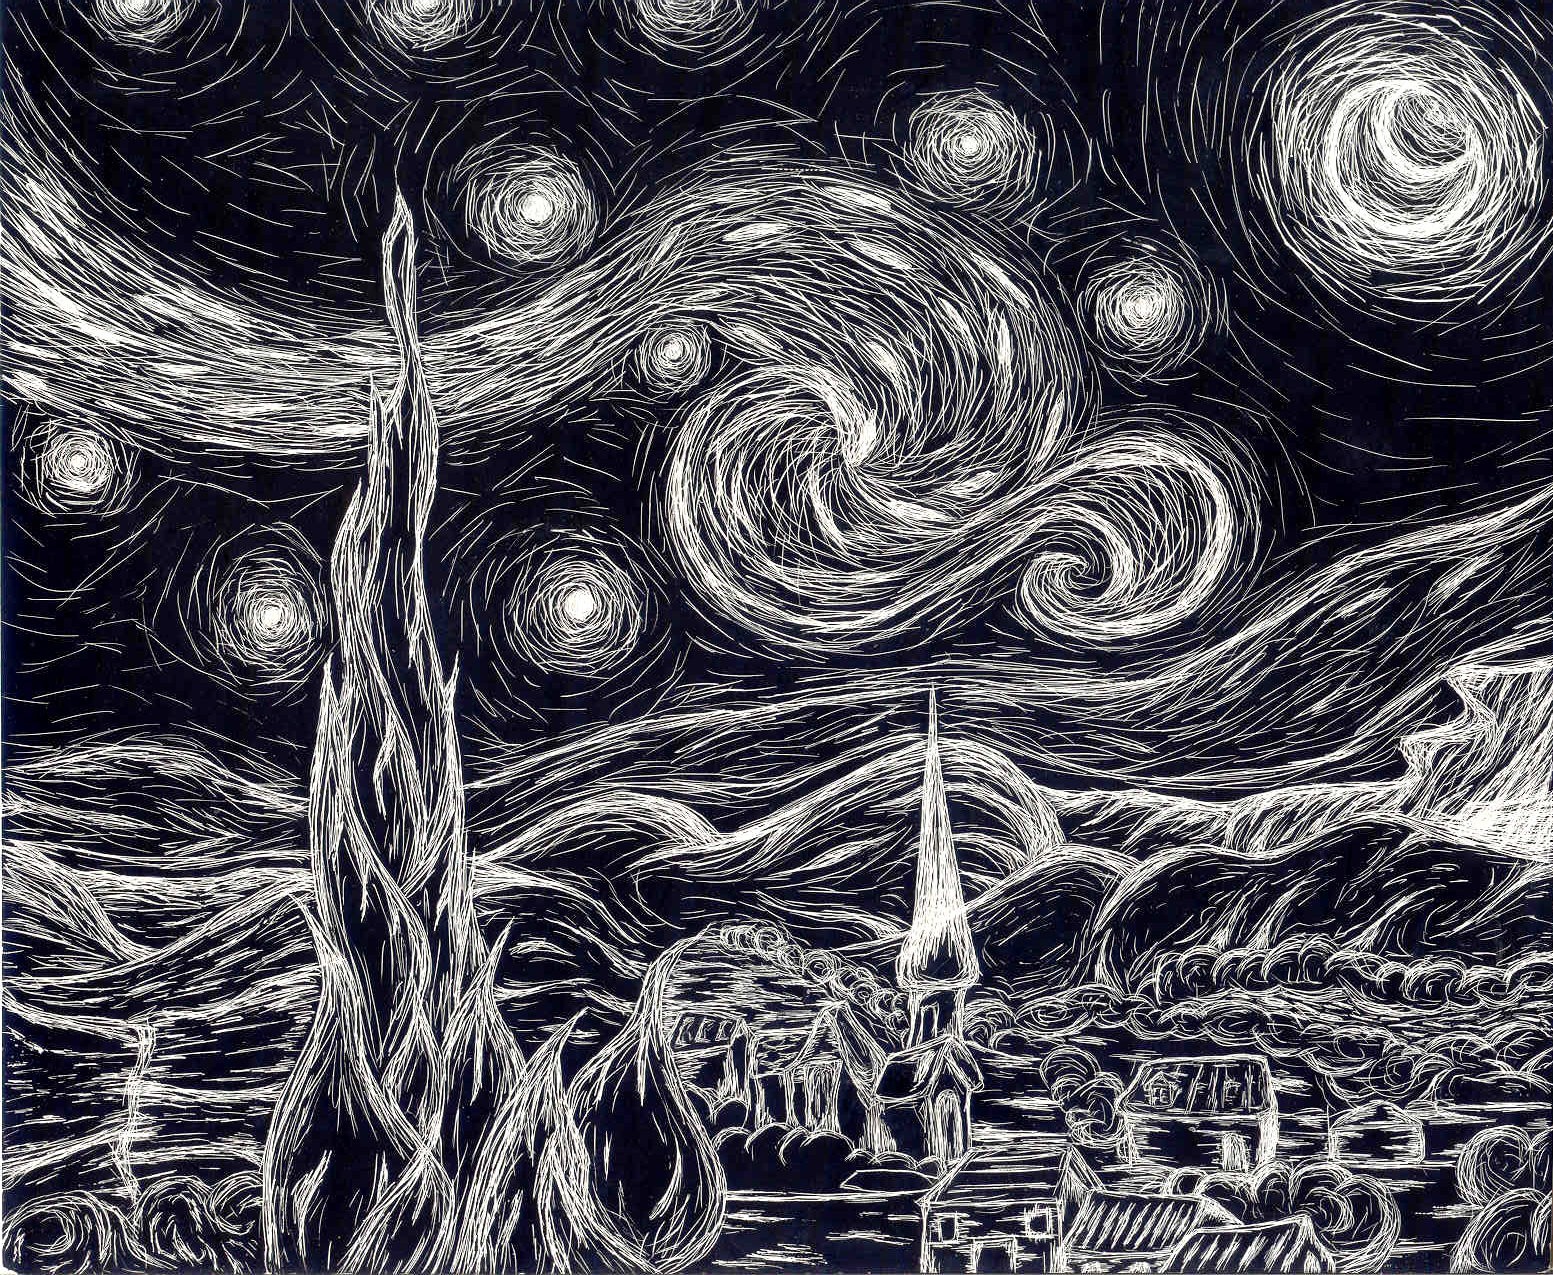 Starry Night (Scratchboard)